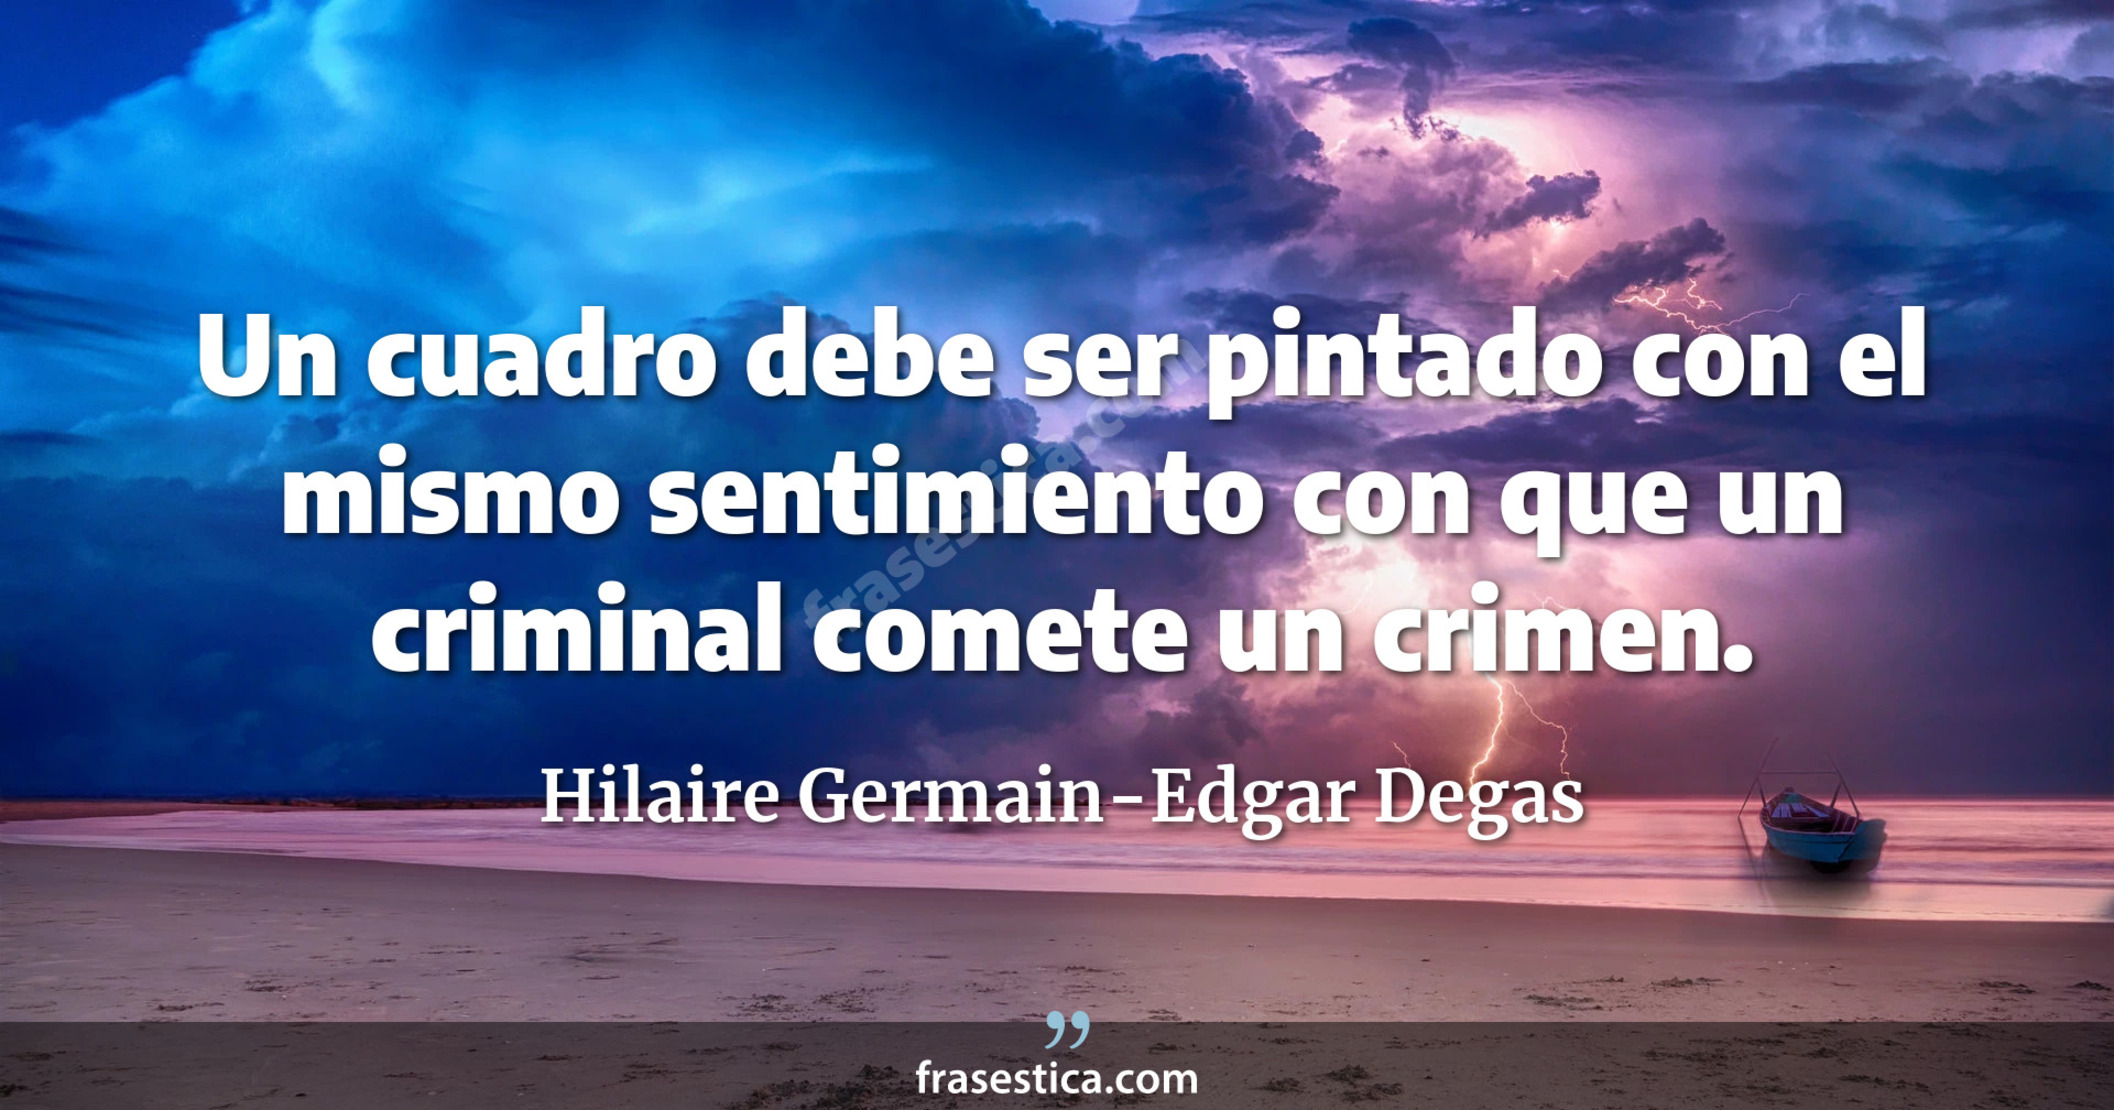 Un cuadro debe ser pintado con el mismo sentimiento con que un criminal comete un crimen. - Hilaire Germain-Edgar Degas